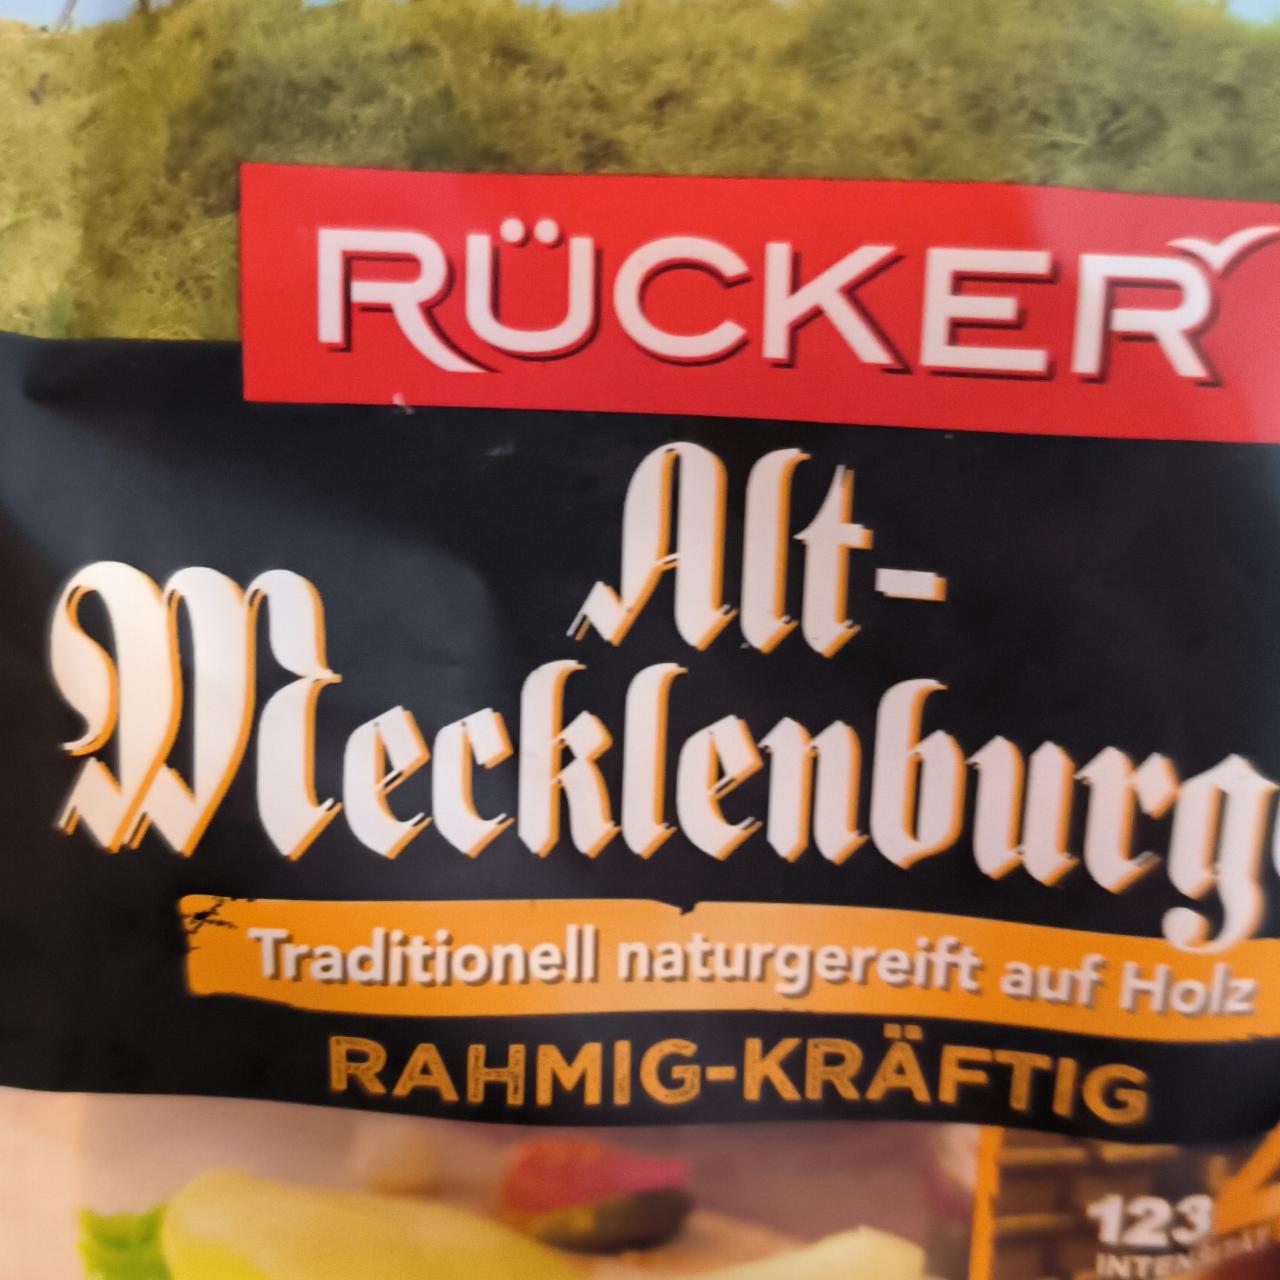 Zdjęcia - Alt-mecklenburger rahmig kráftig Rücker